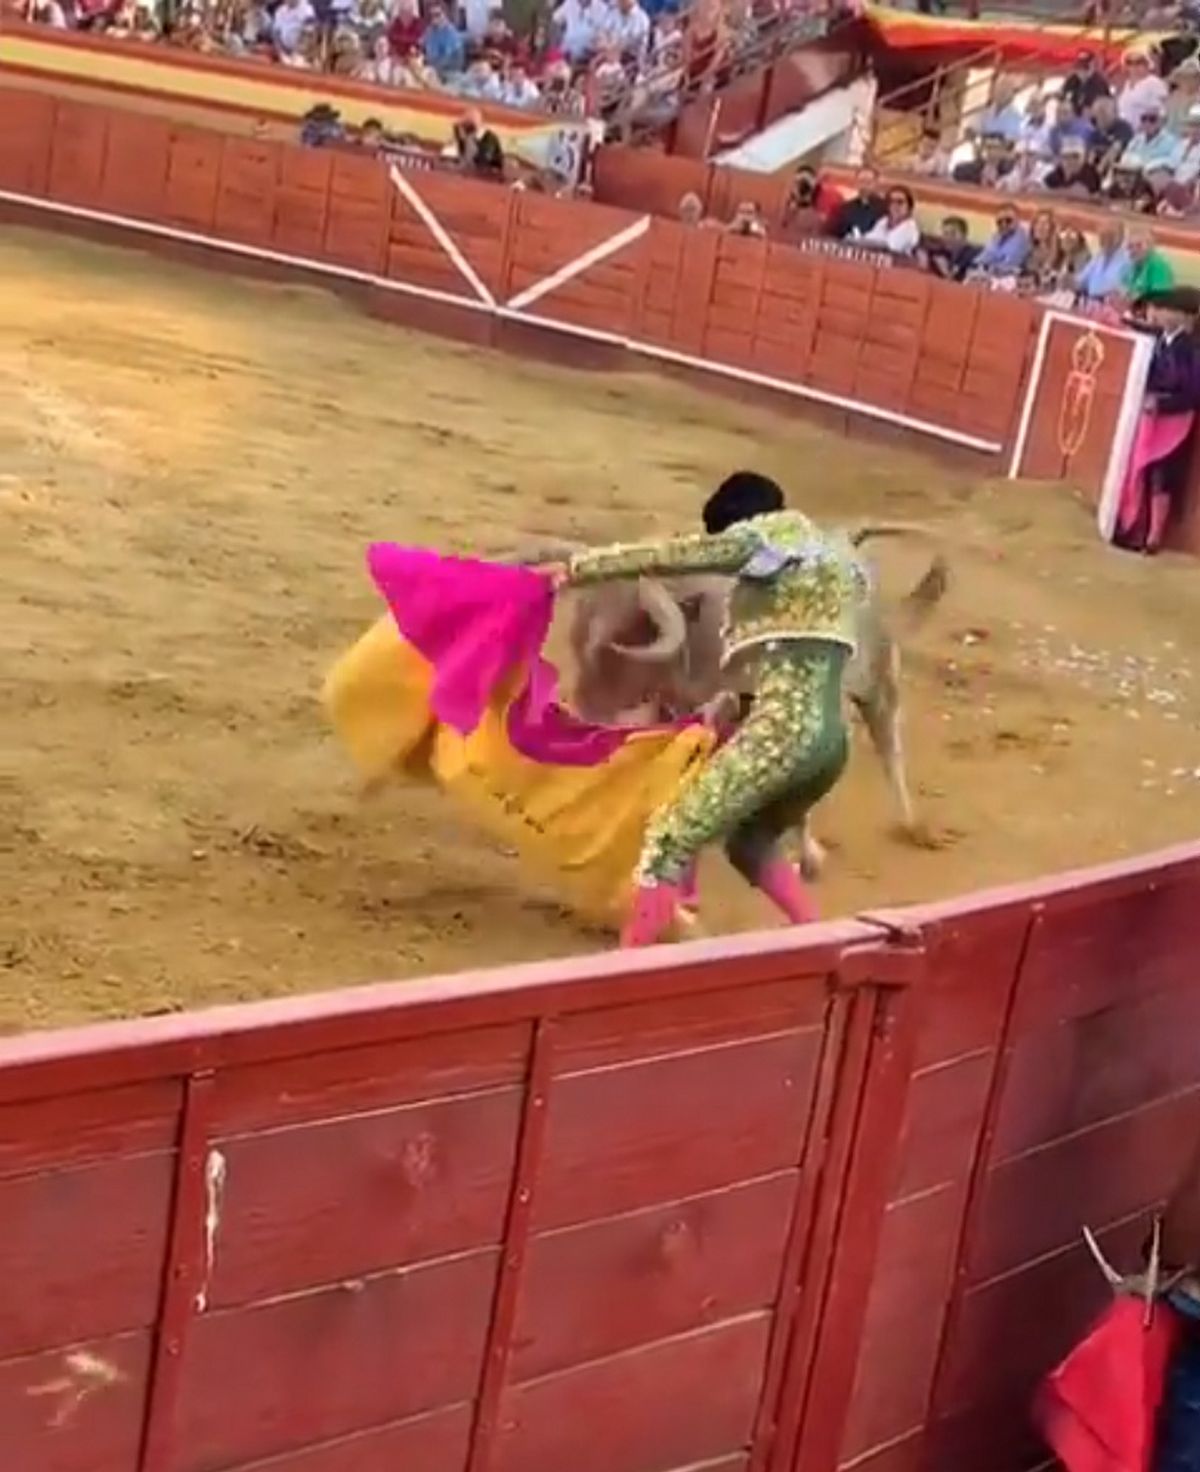 Le matador Alejandro Conquero a été gravement blessé lors d'une corrida traditionnelle en Espagne.